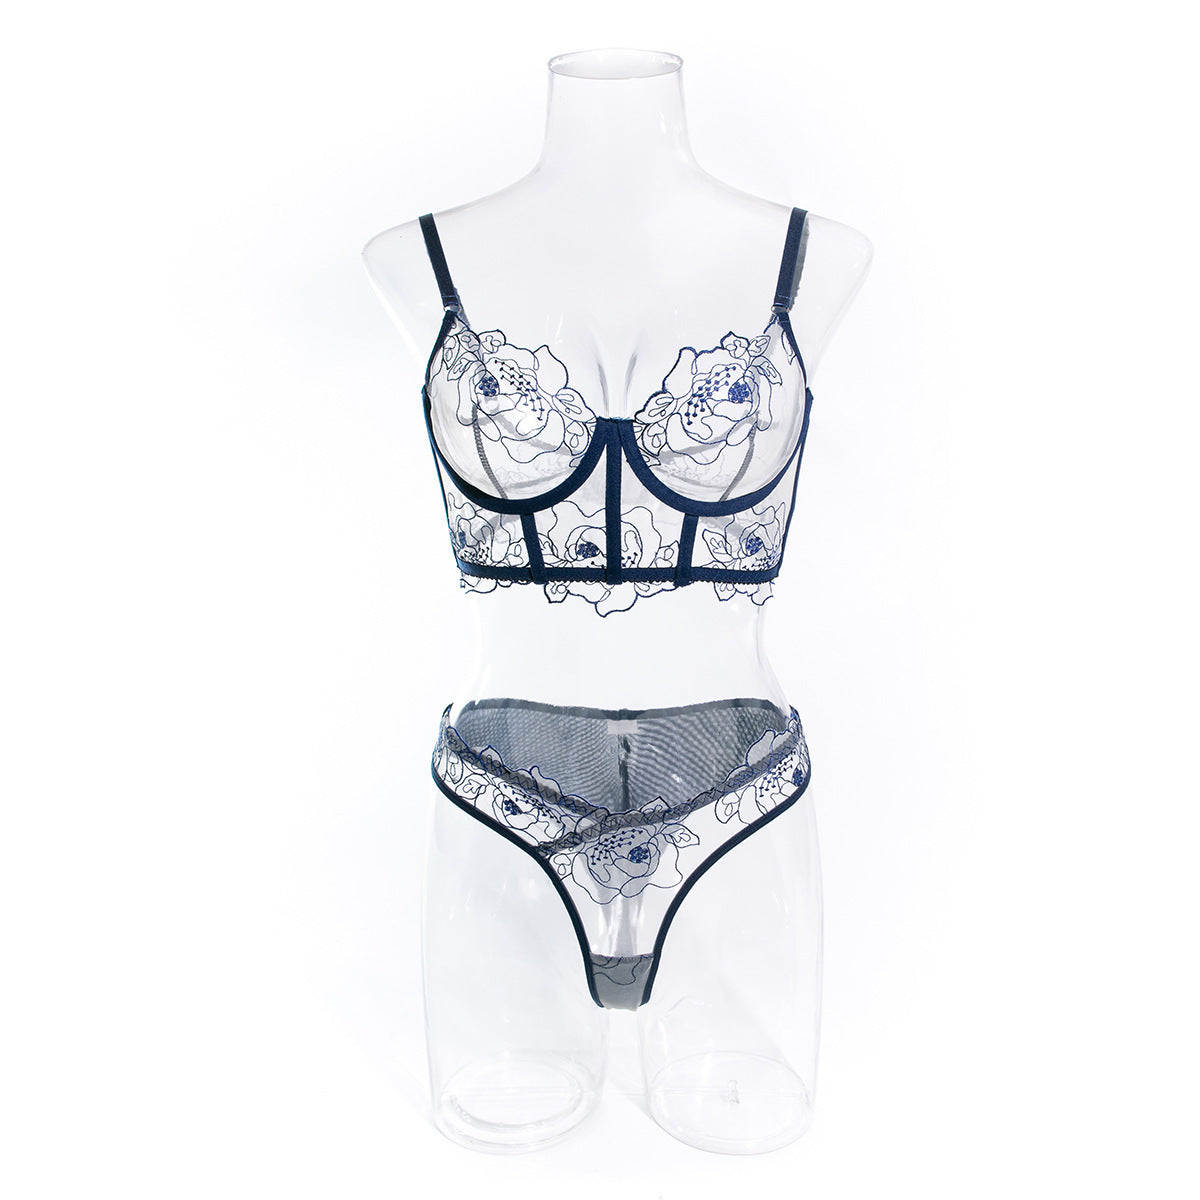 Transparent underwear set